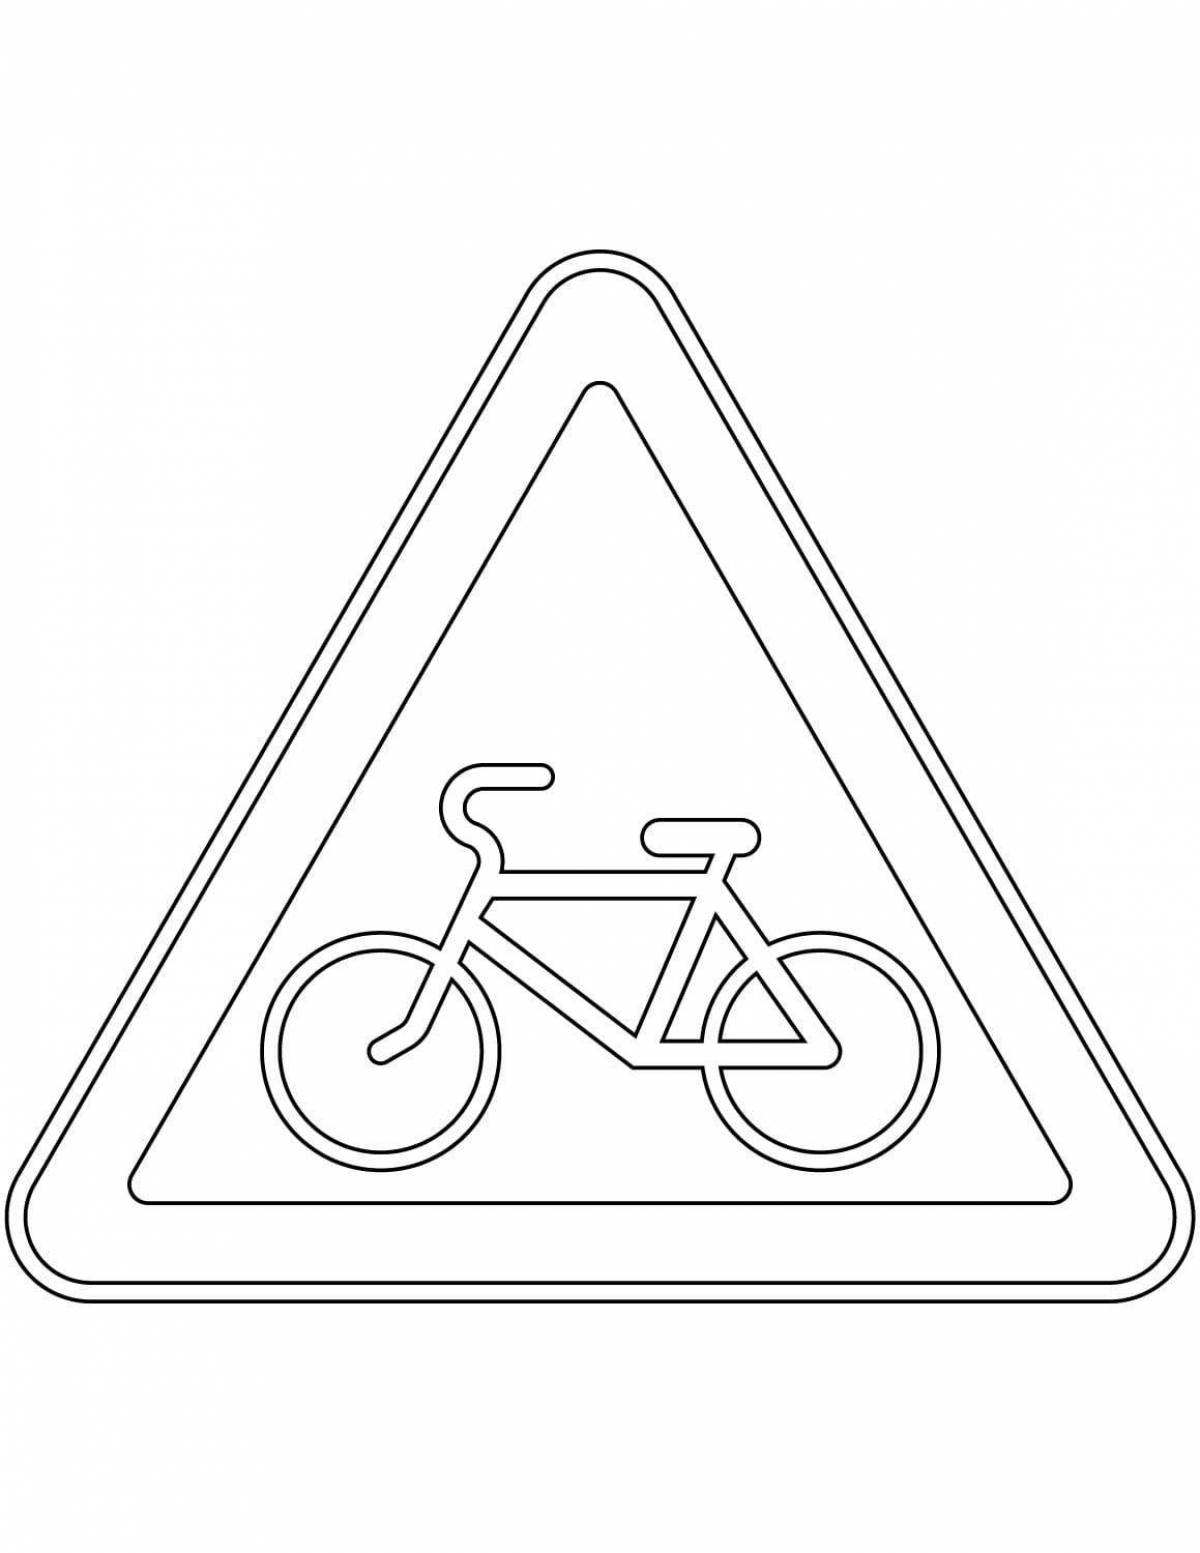 Страница раскраски fun bike path sign